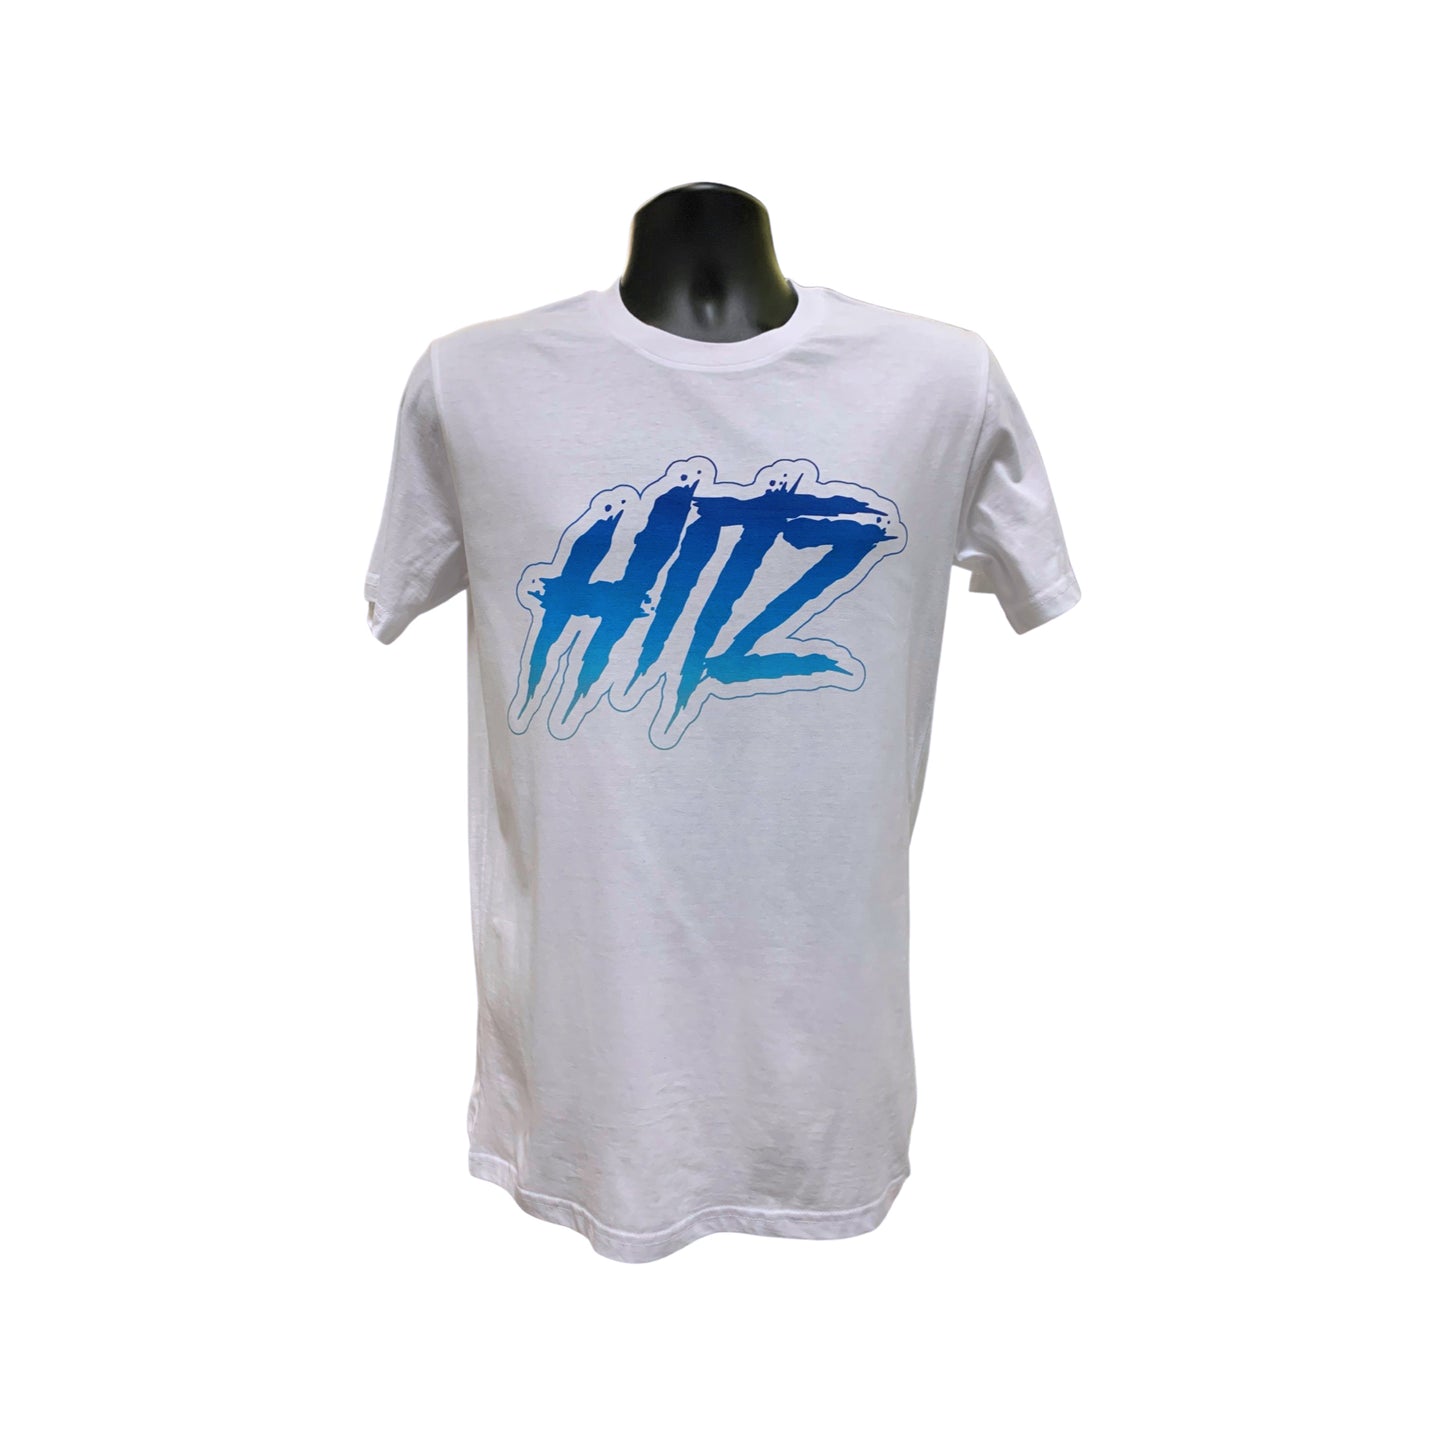 H1TZ SHORT SLEEVE T-SHIRT - BLUE